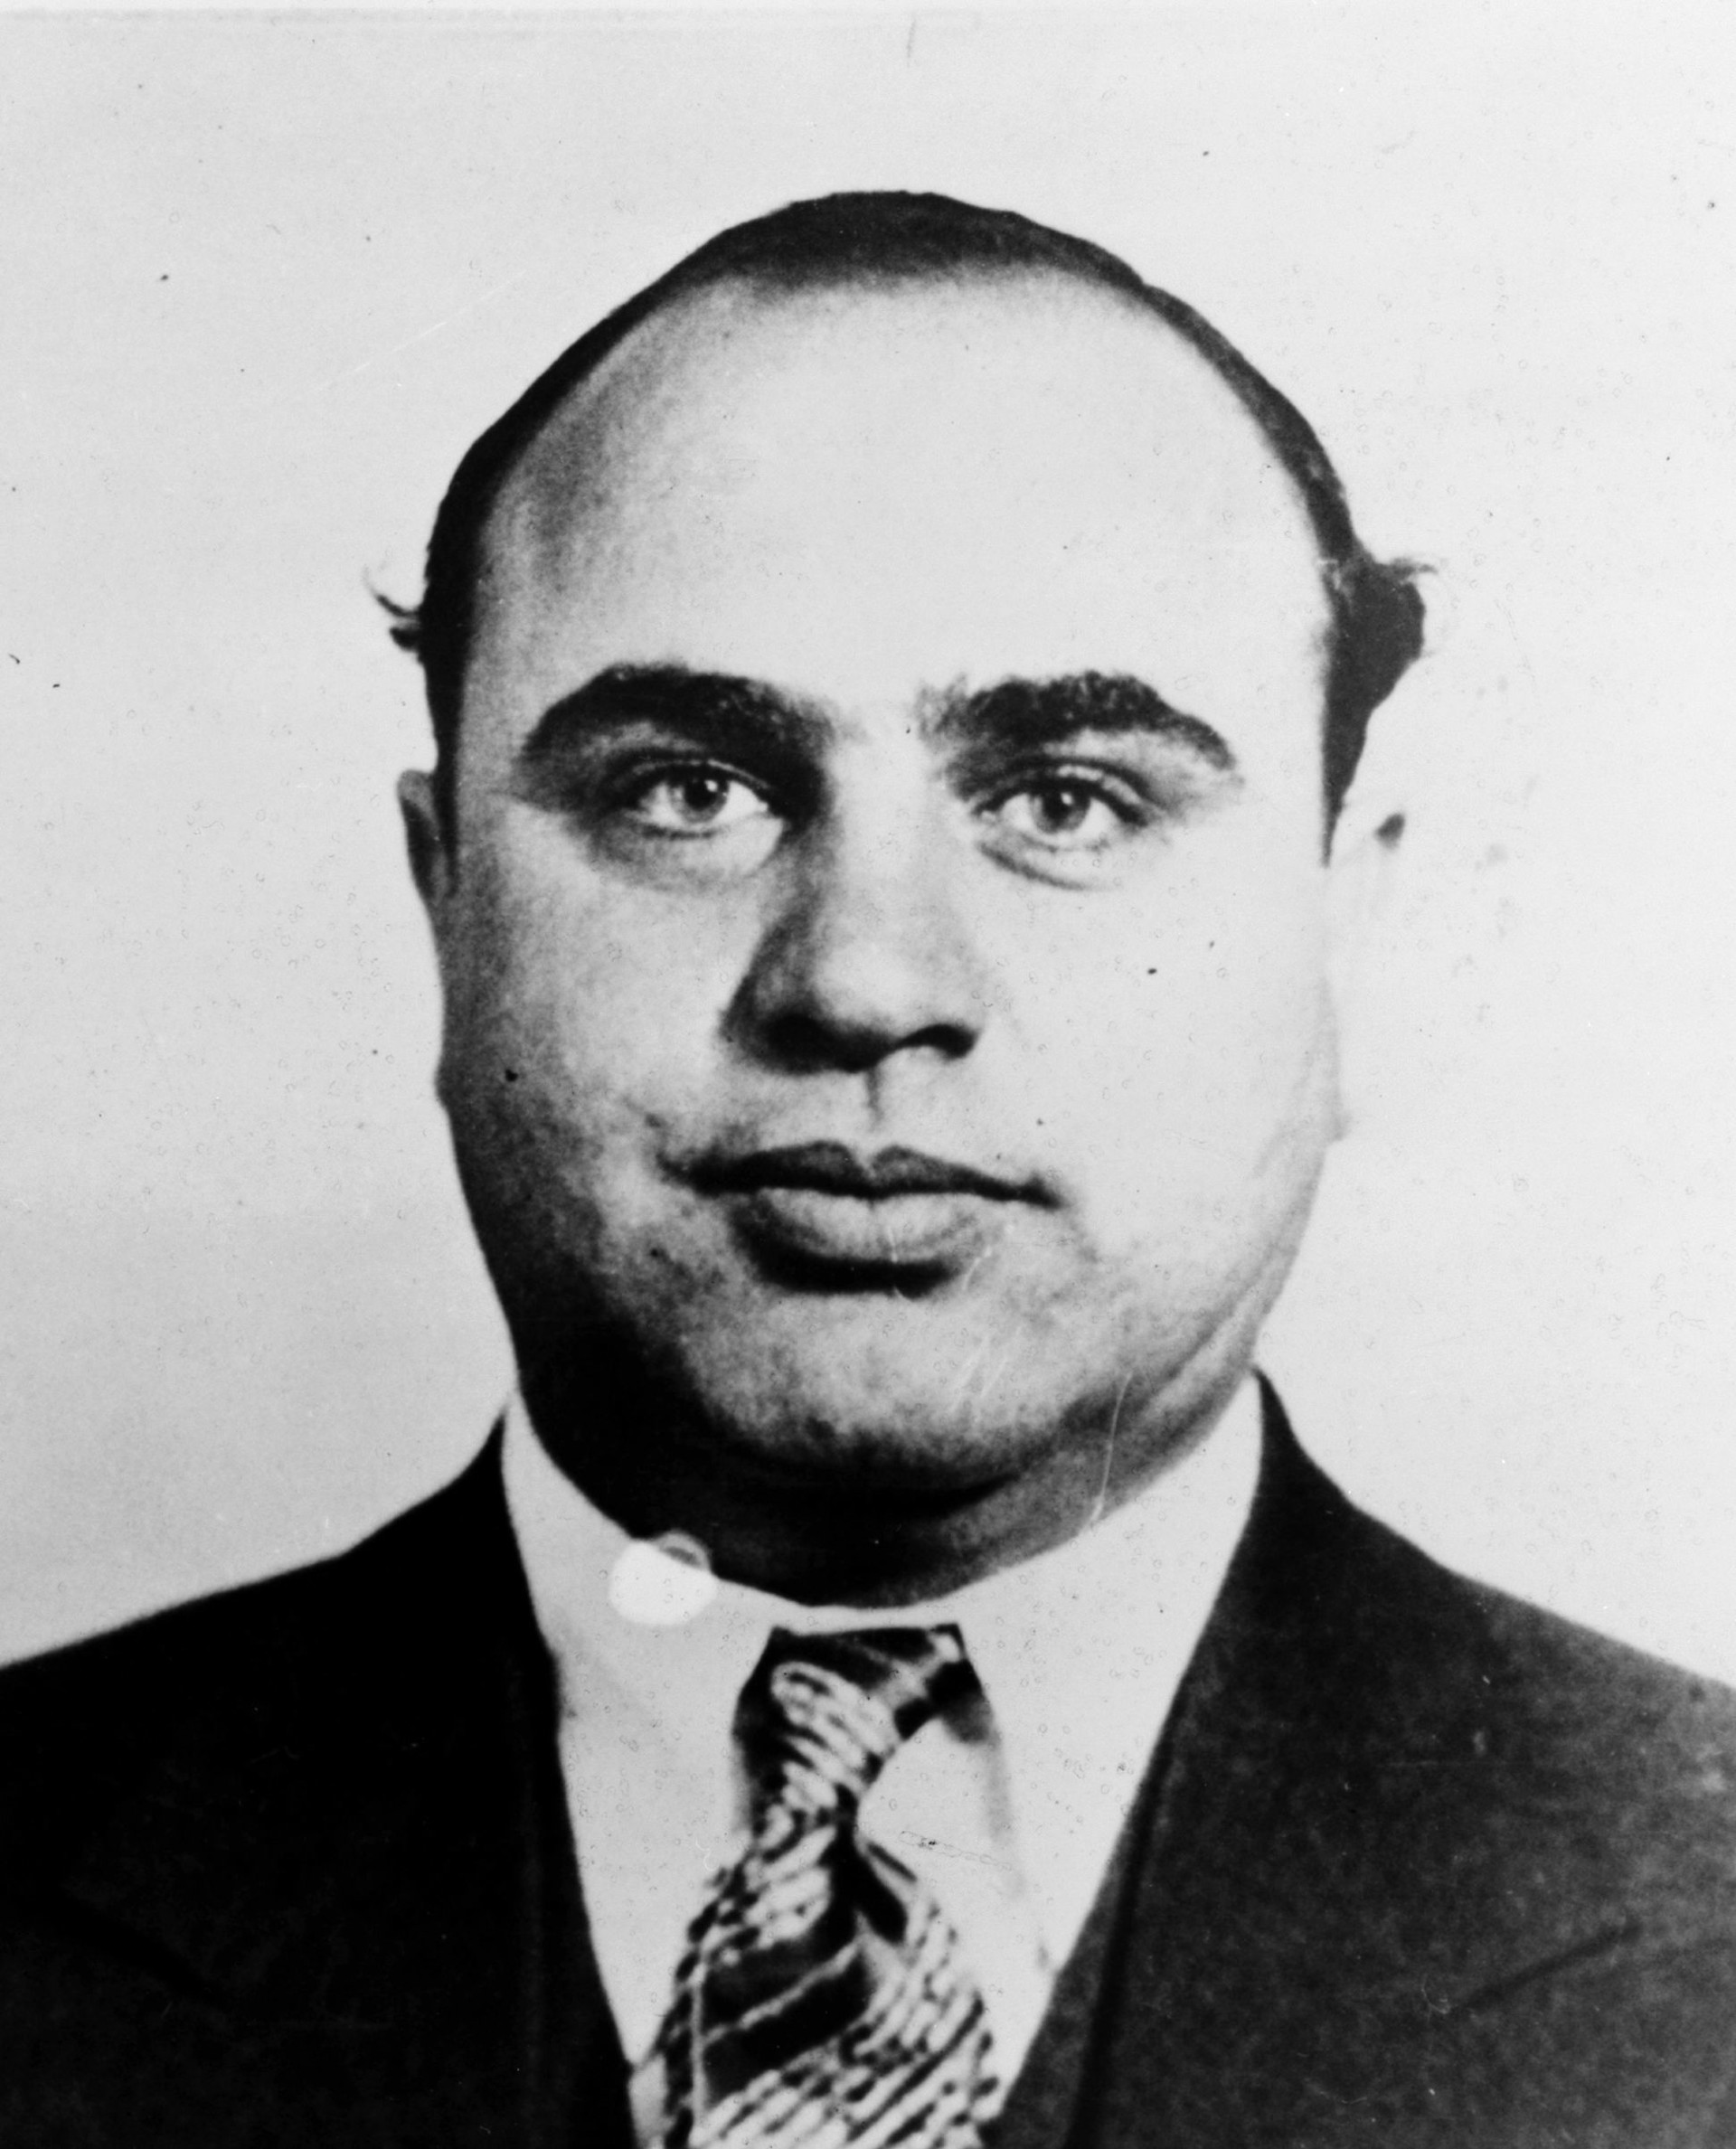 A mugshot of infamous gang leader Al Capone